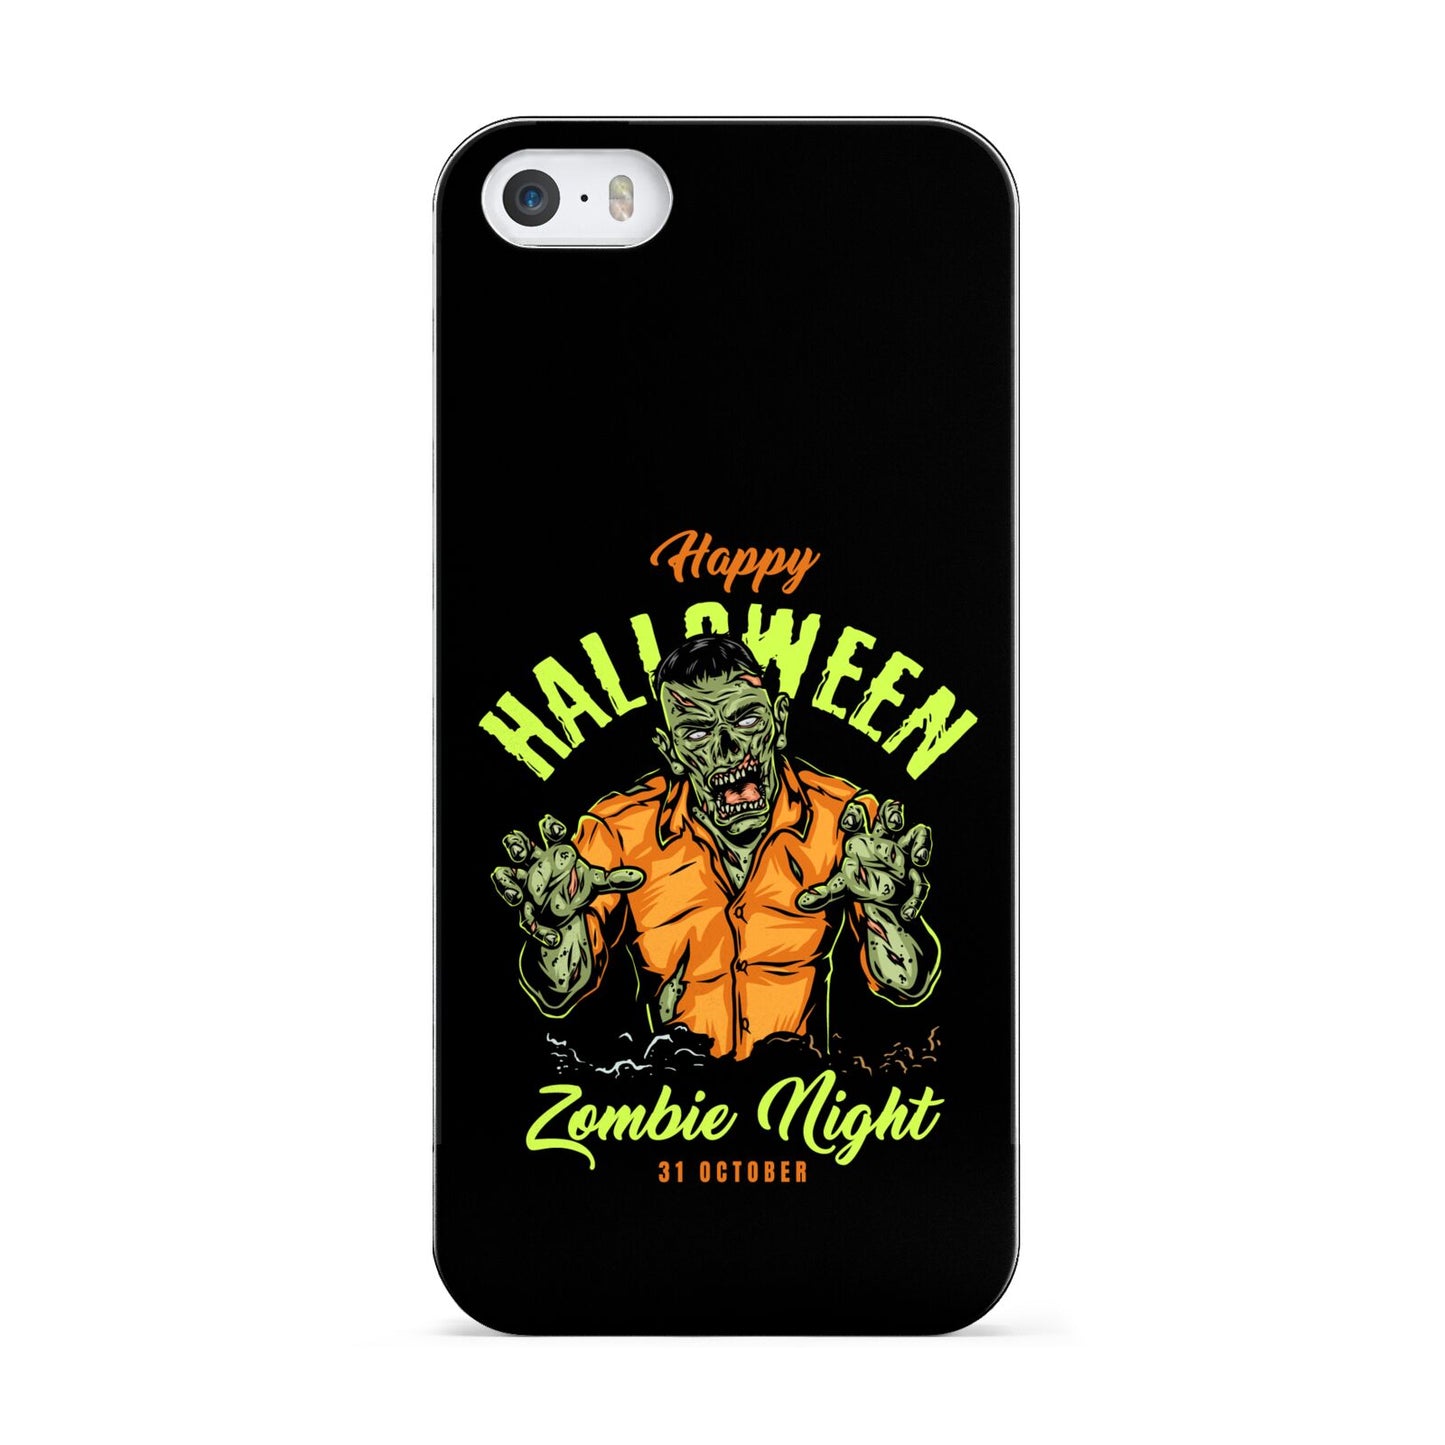 Zombie Apple iPhone 5 Case